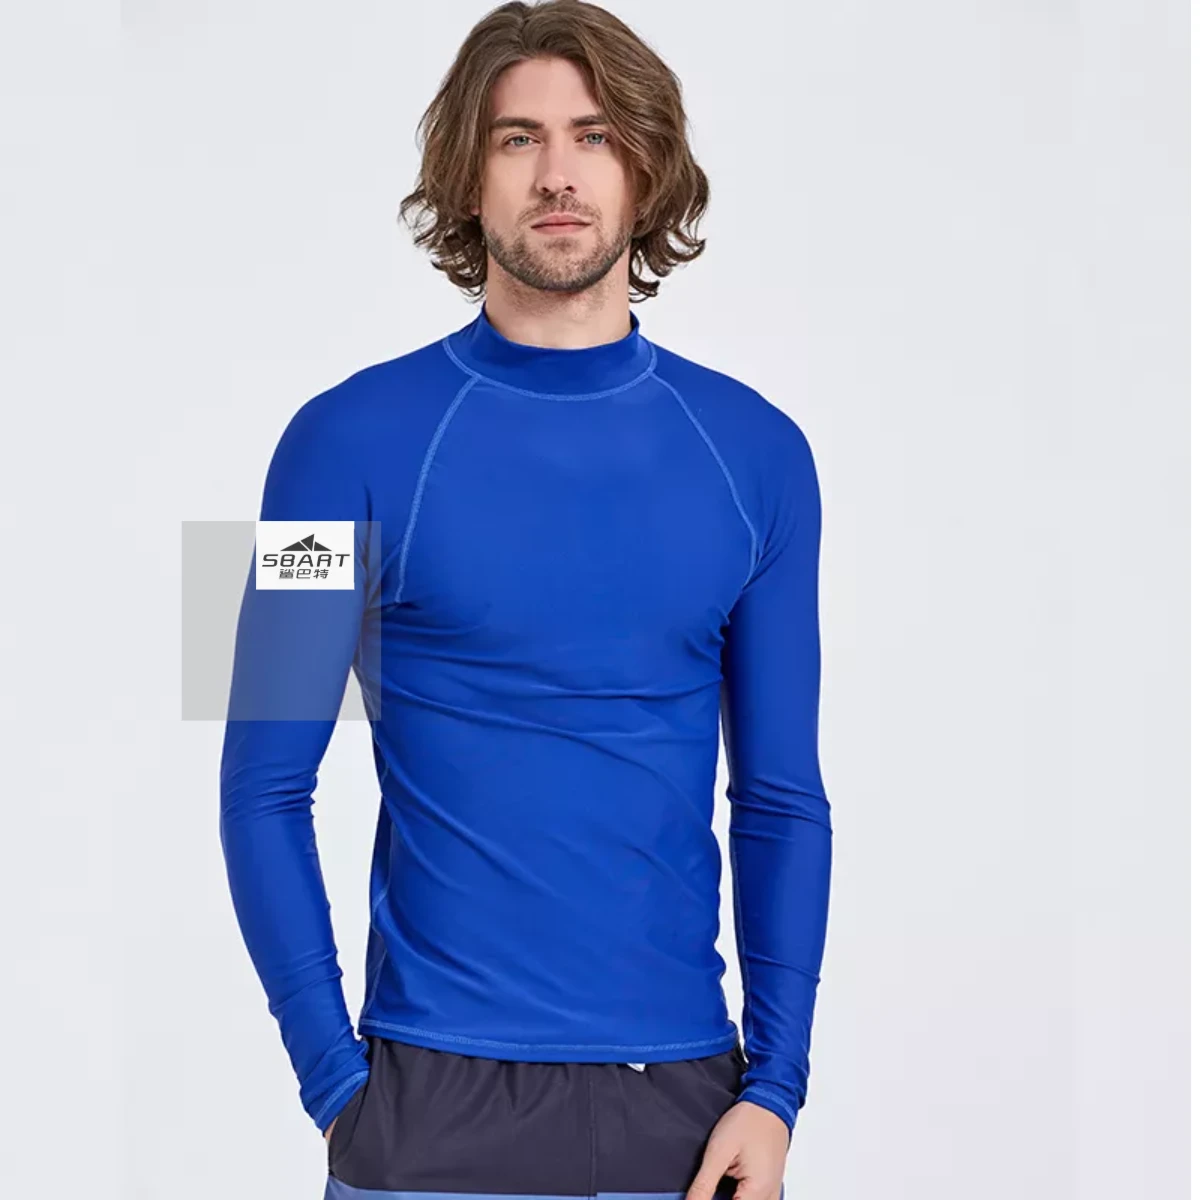 Sbart Long Sleeve Rashie Quick Dry Rash Vest Chlorine Resistant Swim Shirt Mens UV Protection Surfing Rash Guard